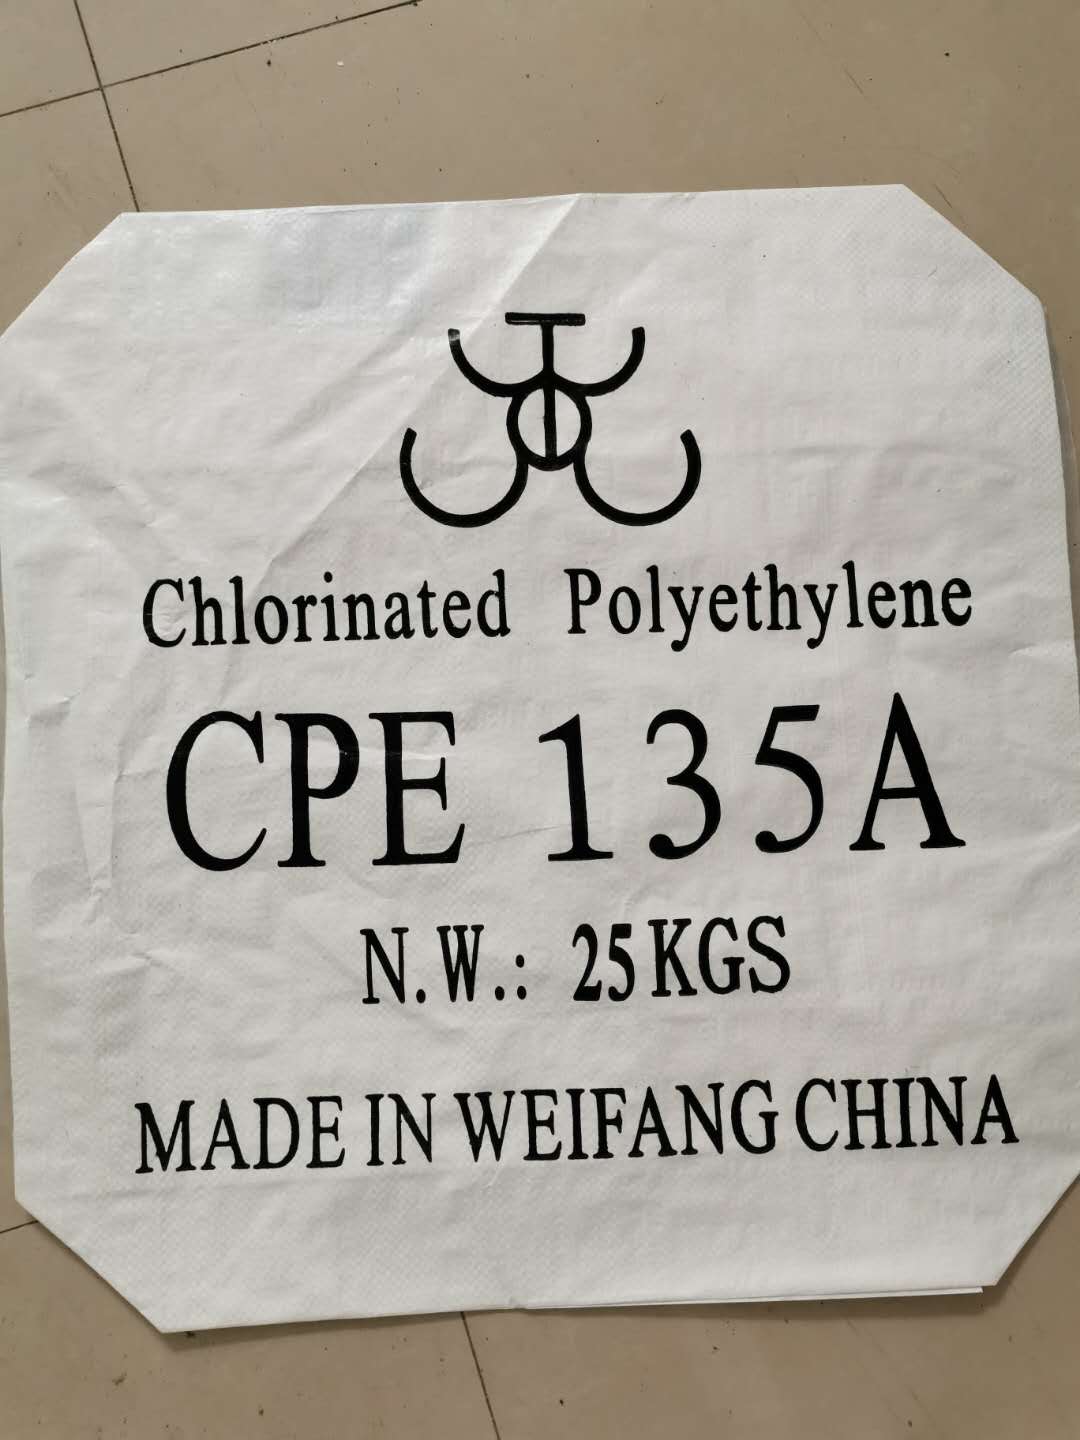 Avisa'm: què és el CPE/polietilè clorat?